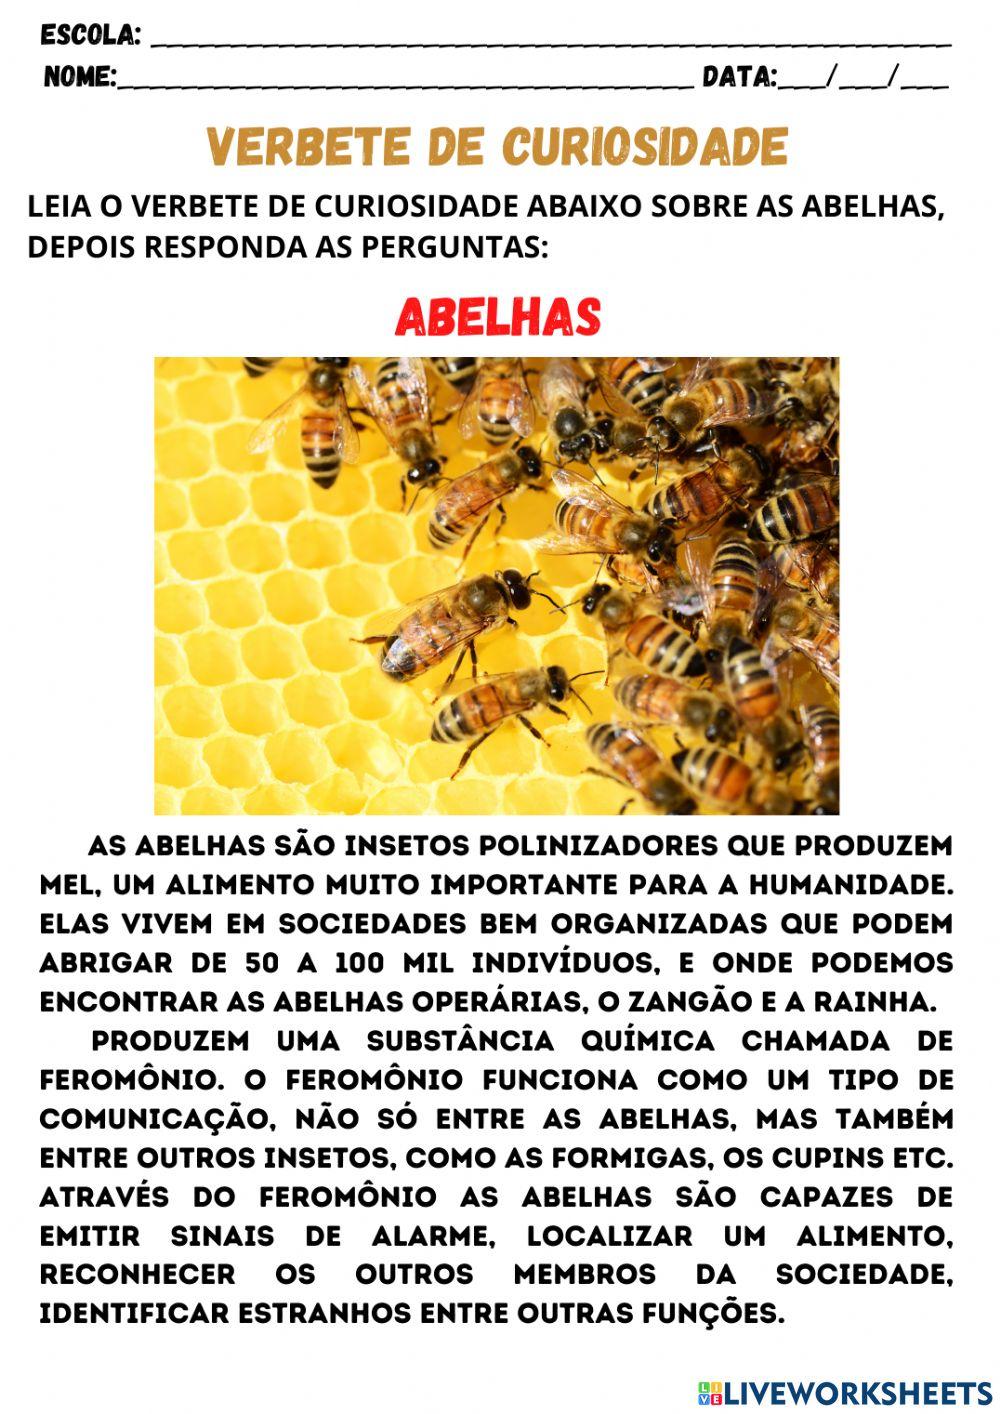 As abelhas